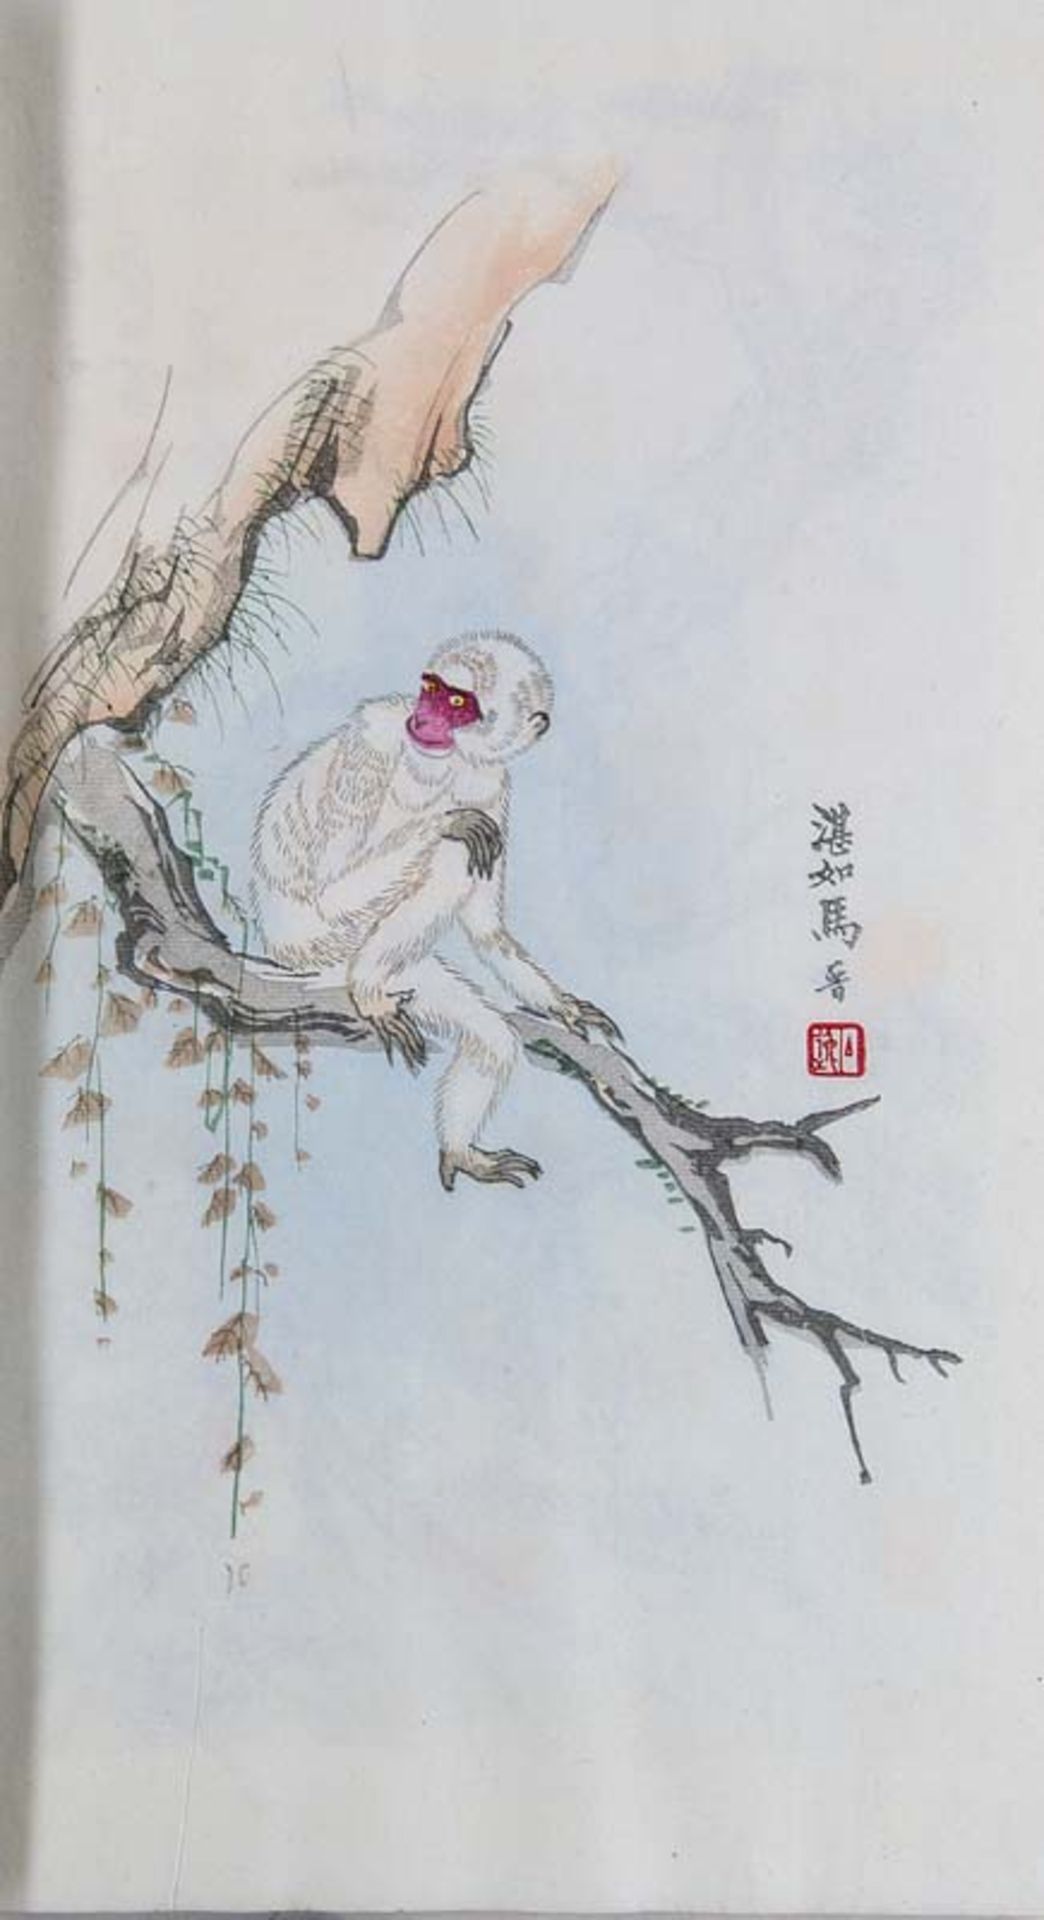 China - - Baishi, Qi (nach). (1864 Xiangtan - 1957 Peking). Pei-ch'ing Yung-pao-ch'ai shih-chien-p'